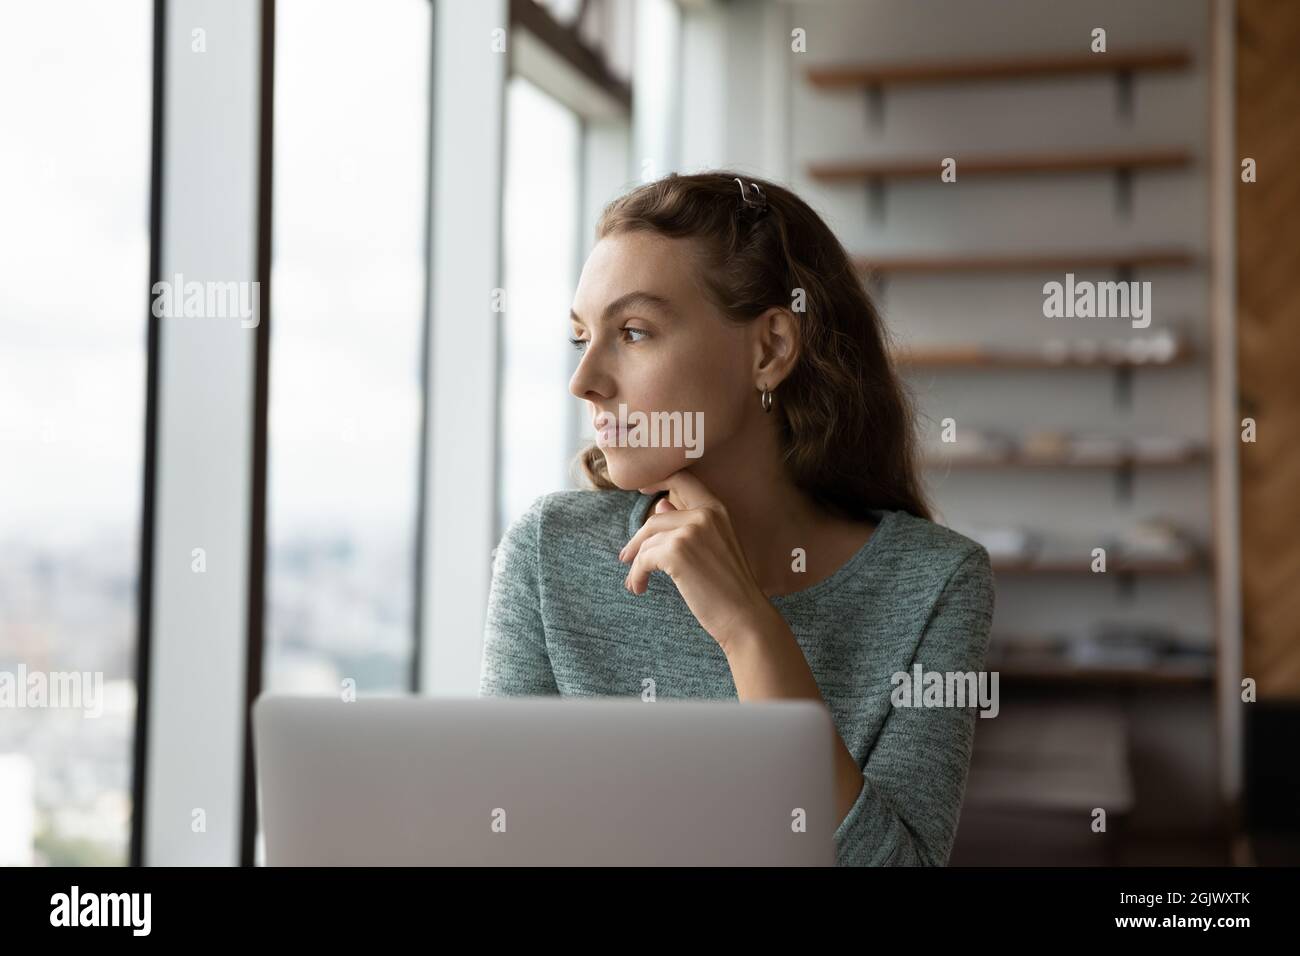 Une femme pensive travaille sur un ordinateur portable Banque D'Images